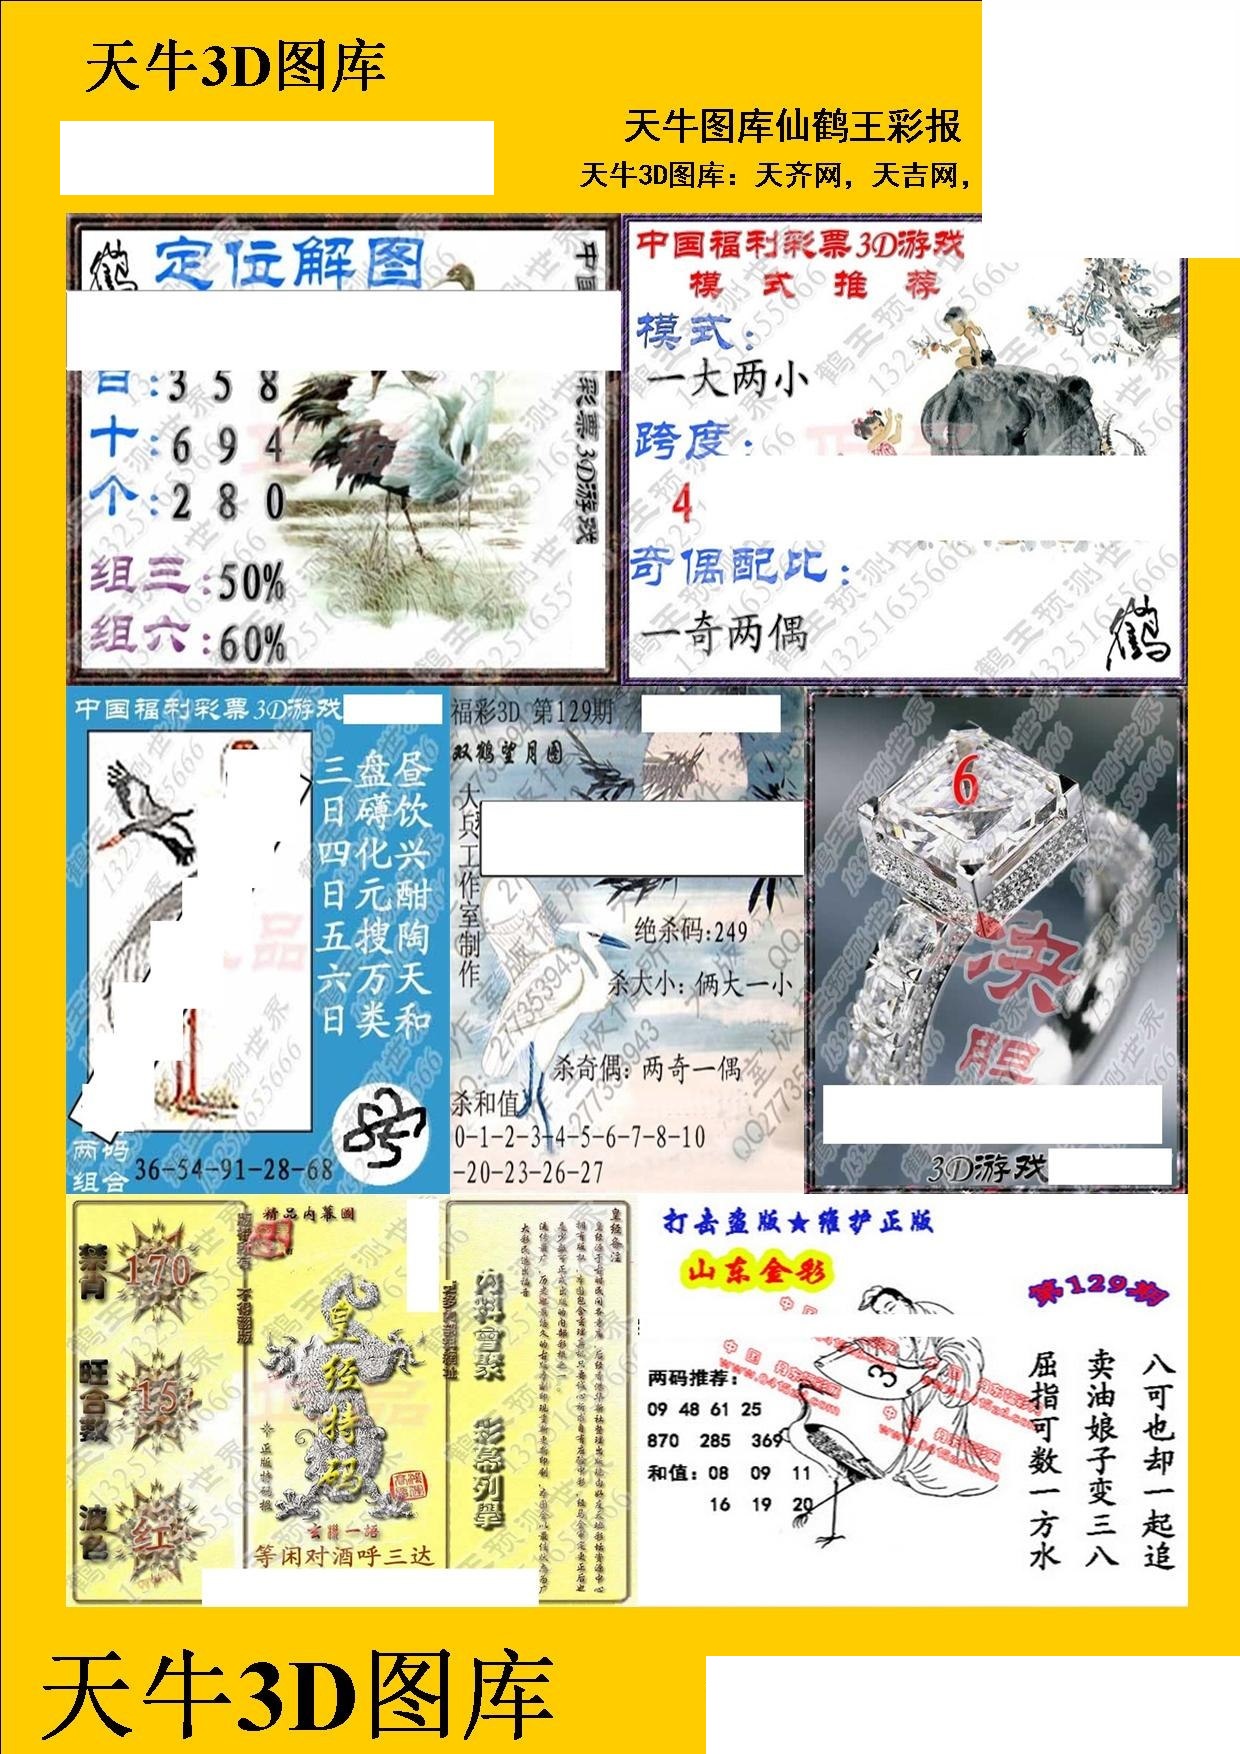 20129期福彩3d 天牛彩报图版系列